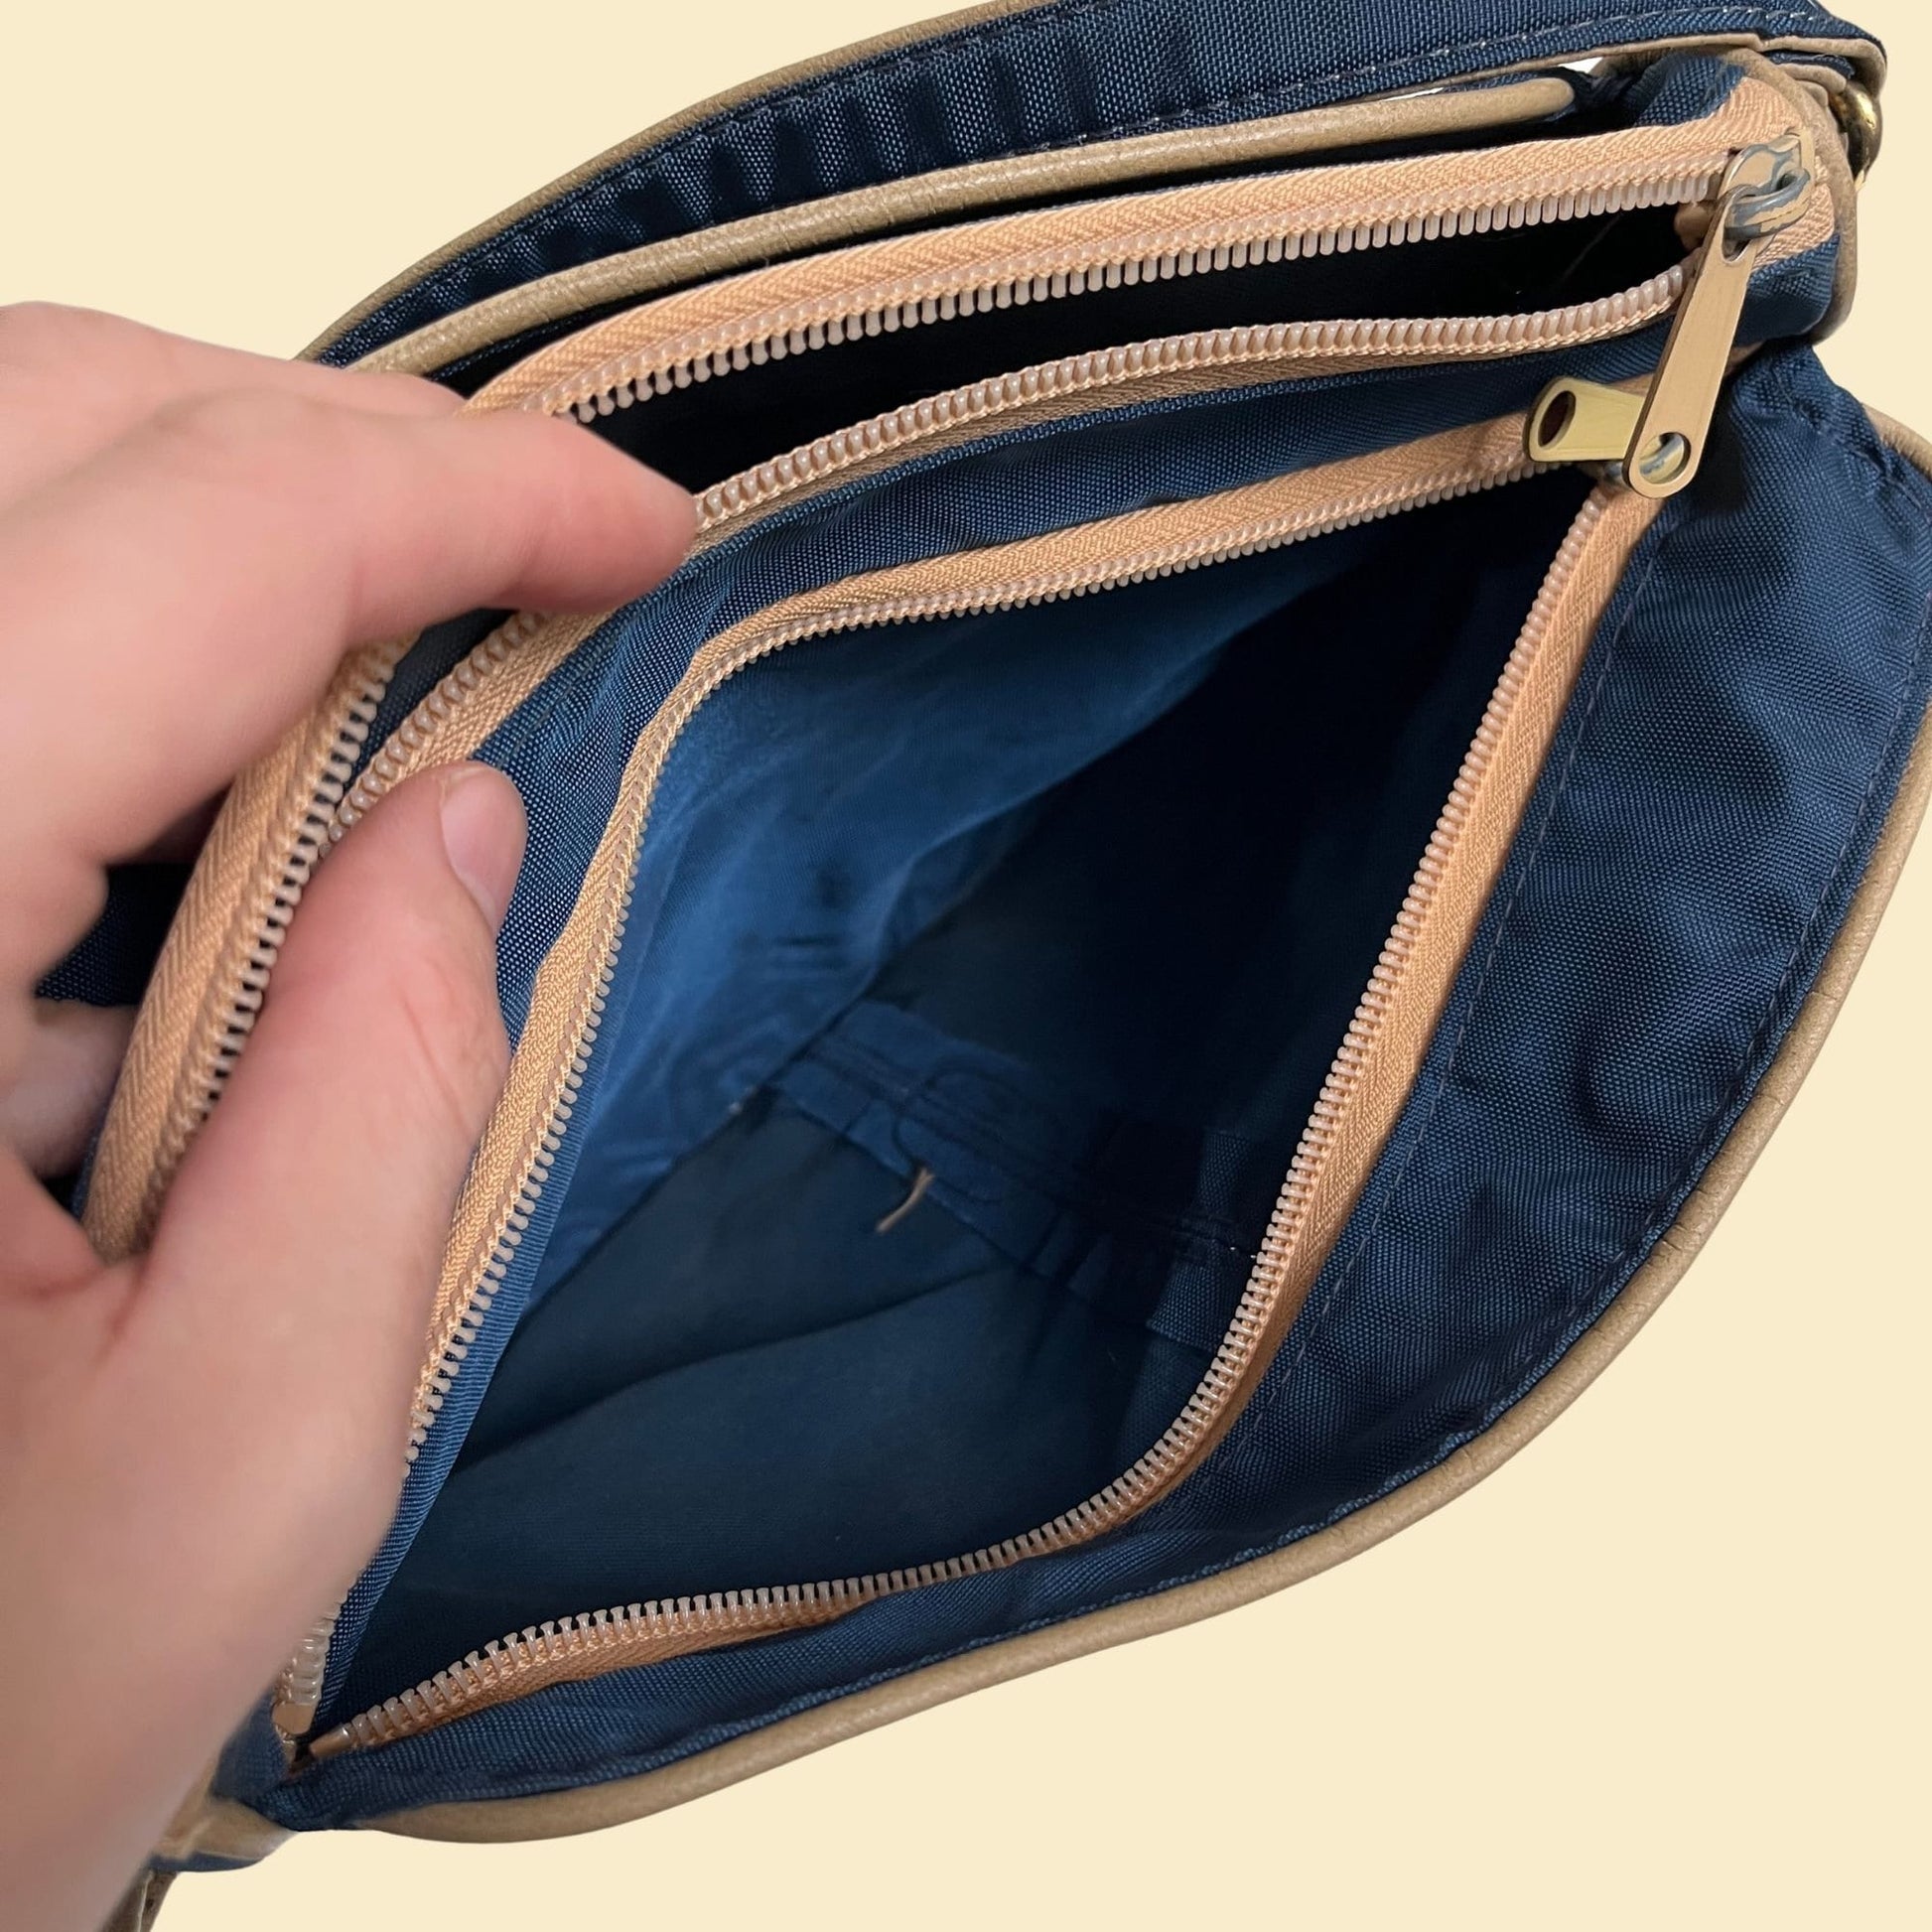 70s shoulder bag, vintage blue & beige leather/nylon travel bag with shoulder strap, 1970s casual purse